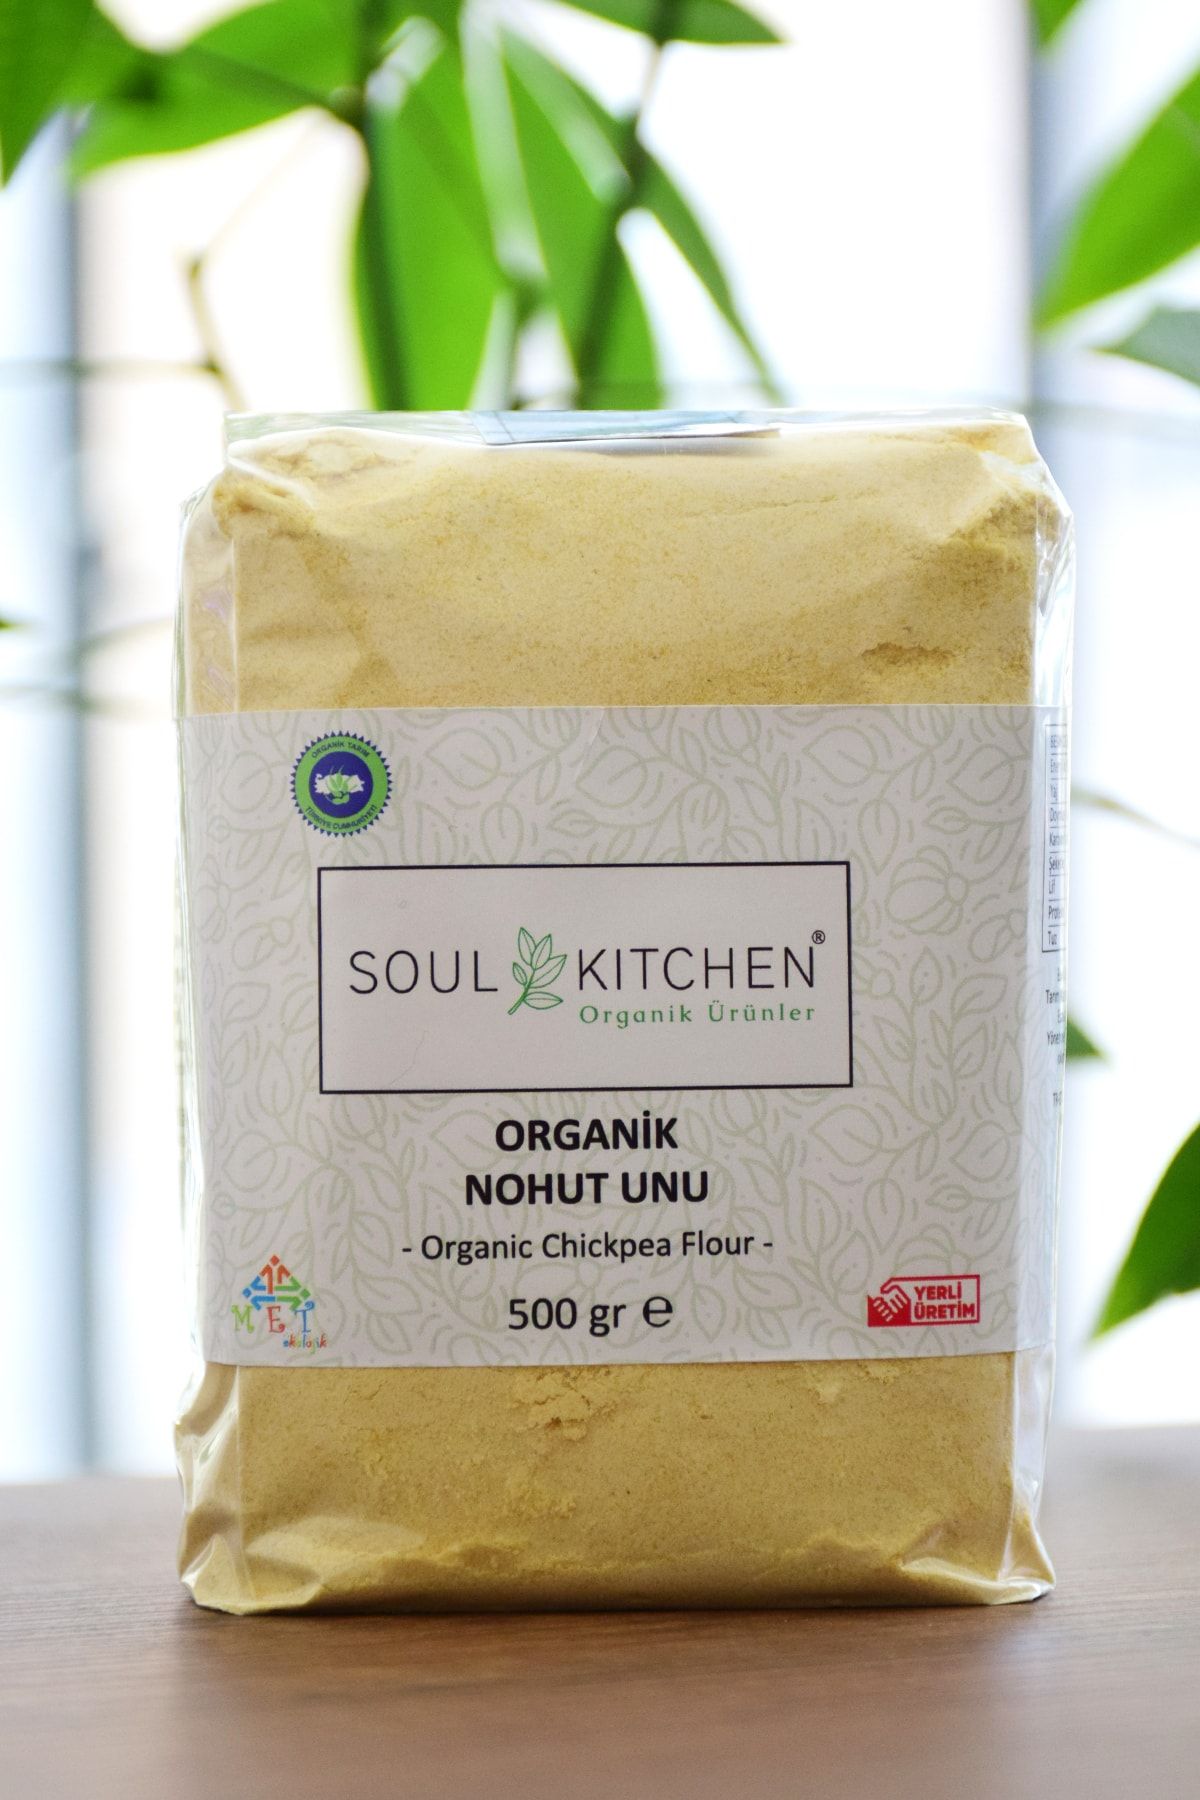 Soul Kitchen Organik Ürünler Organik Nohut Unu 500gr